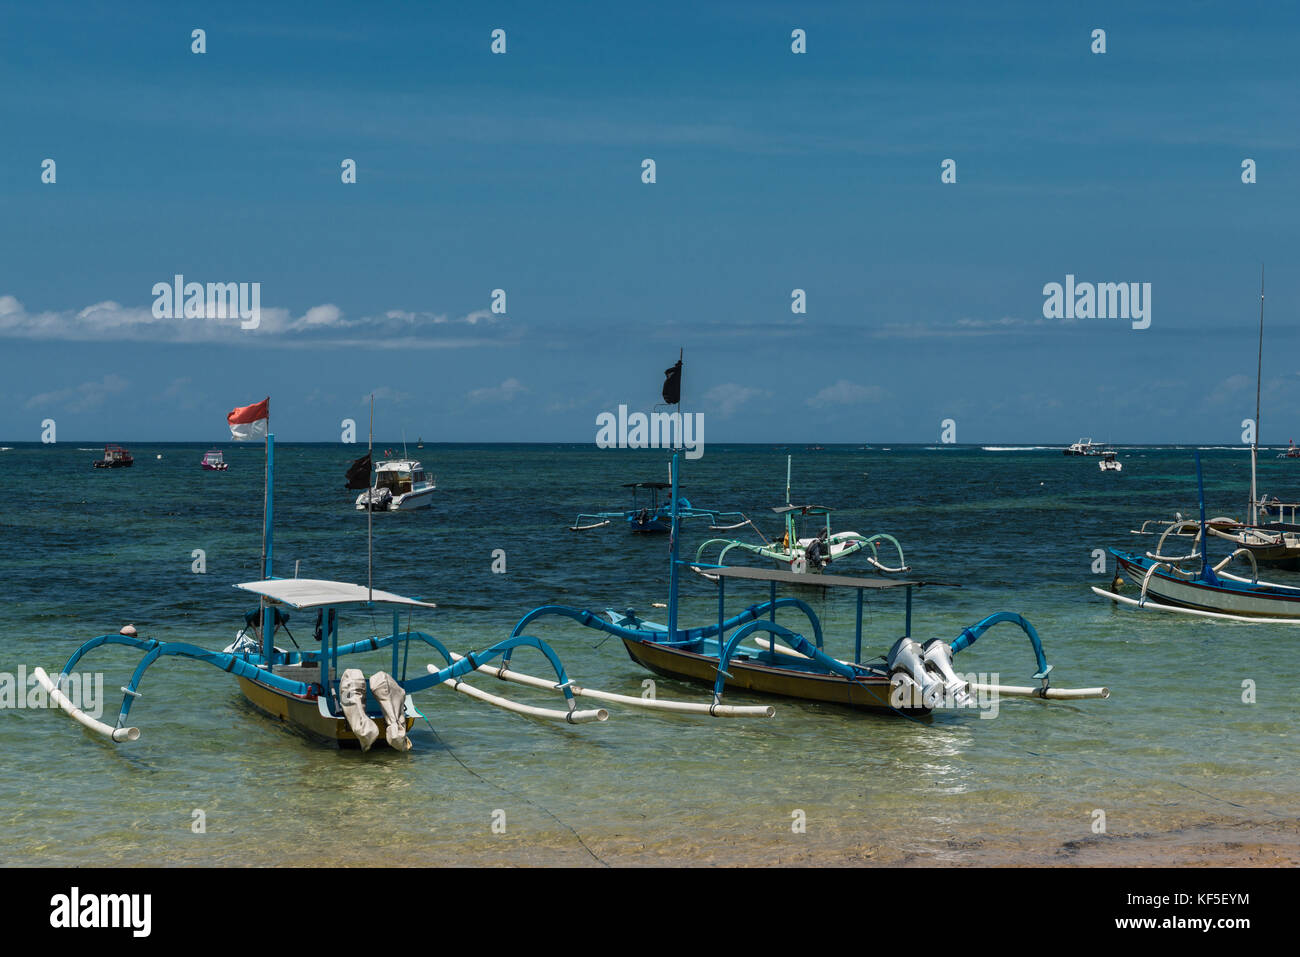 Il tradizionale design balinese dragonfly barca sulla spiaggia. jukung barche di pescatori sulla spiaggia di Sanur, Bali, Indonesia, Asia Foto Stock